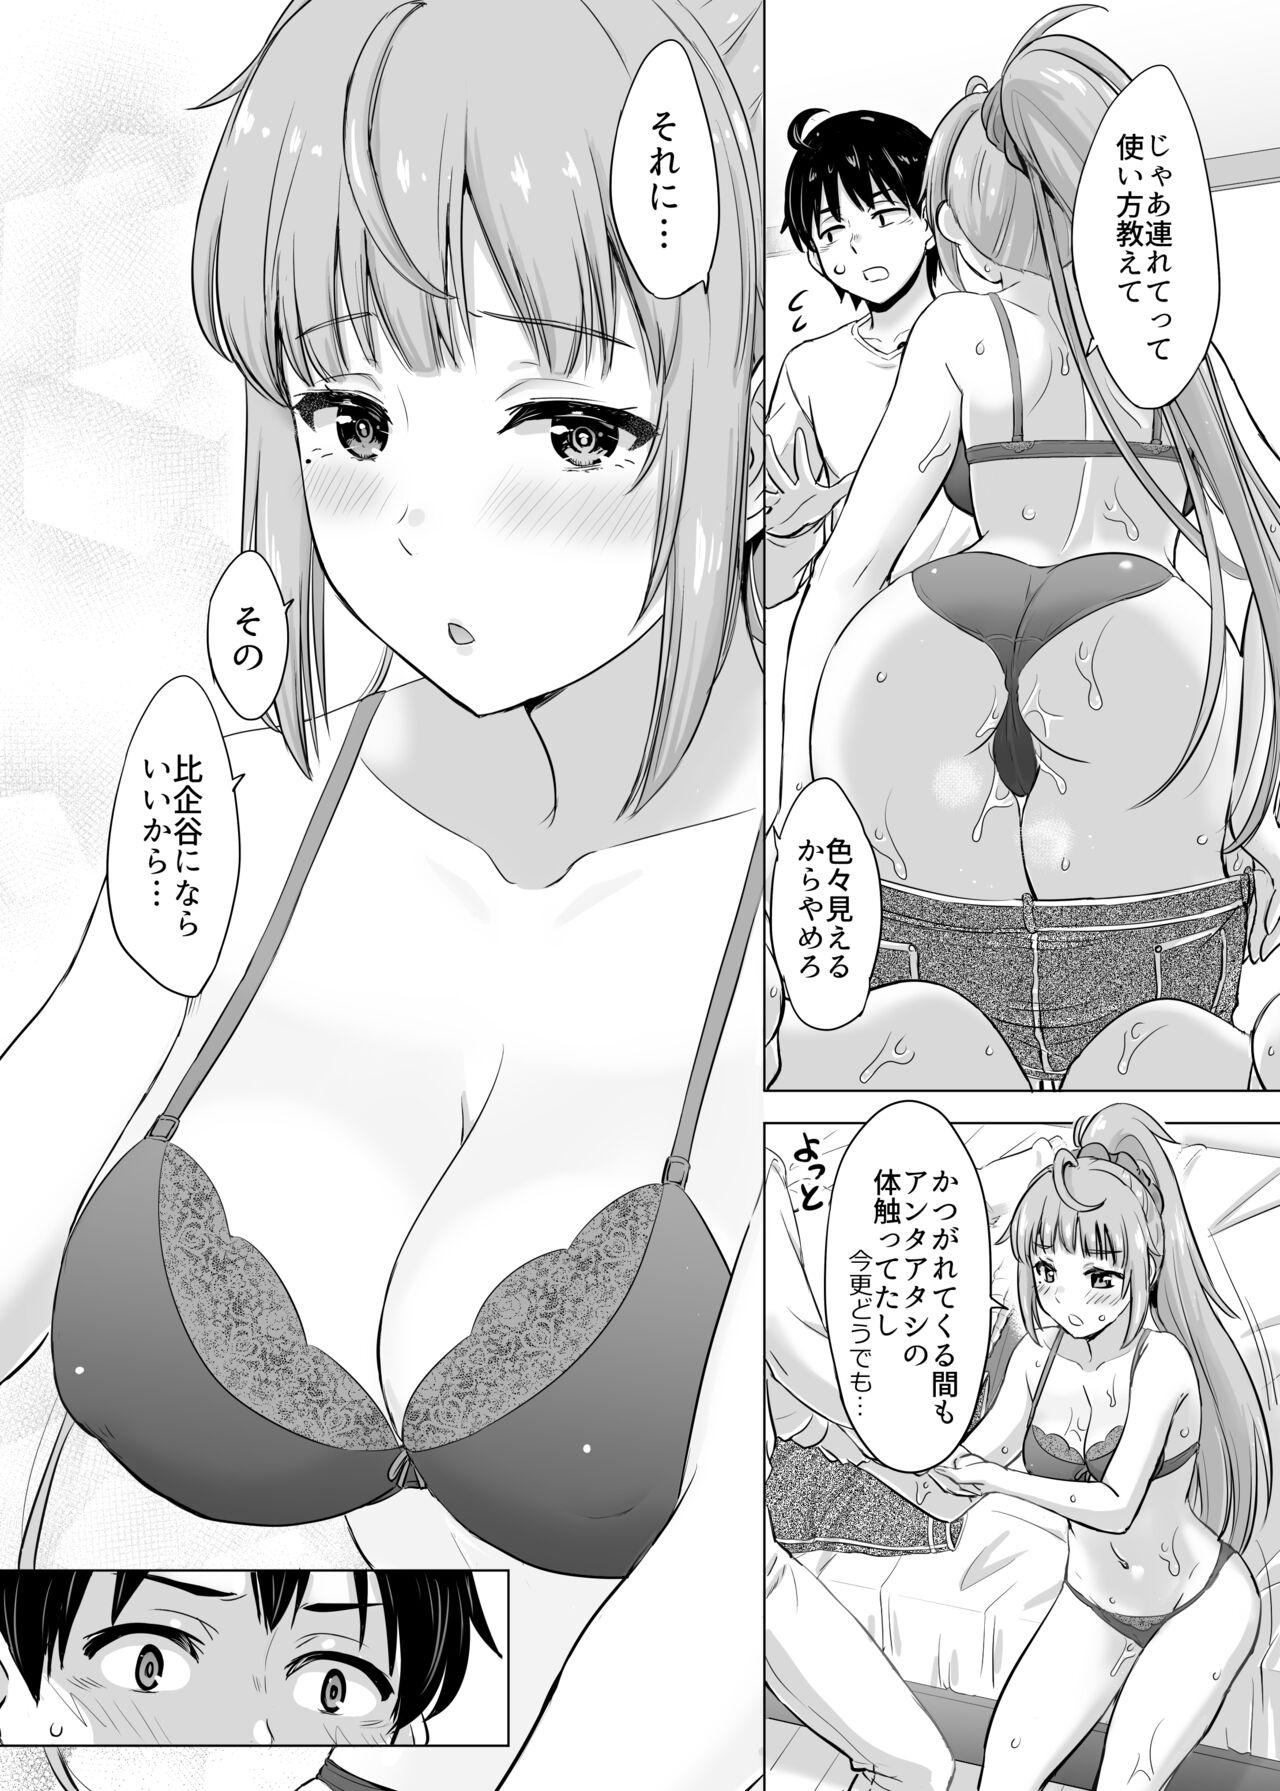 Camshow Ashi-san Saki Saki Manga - Yahari ore no seishun love come wa machigatteiru Rope - Page 5